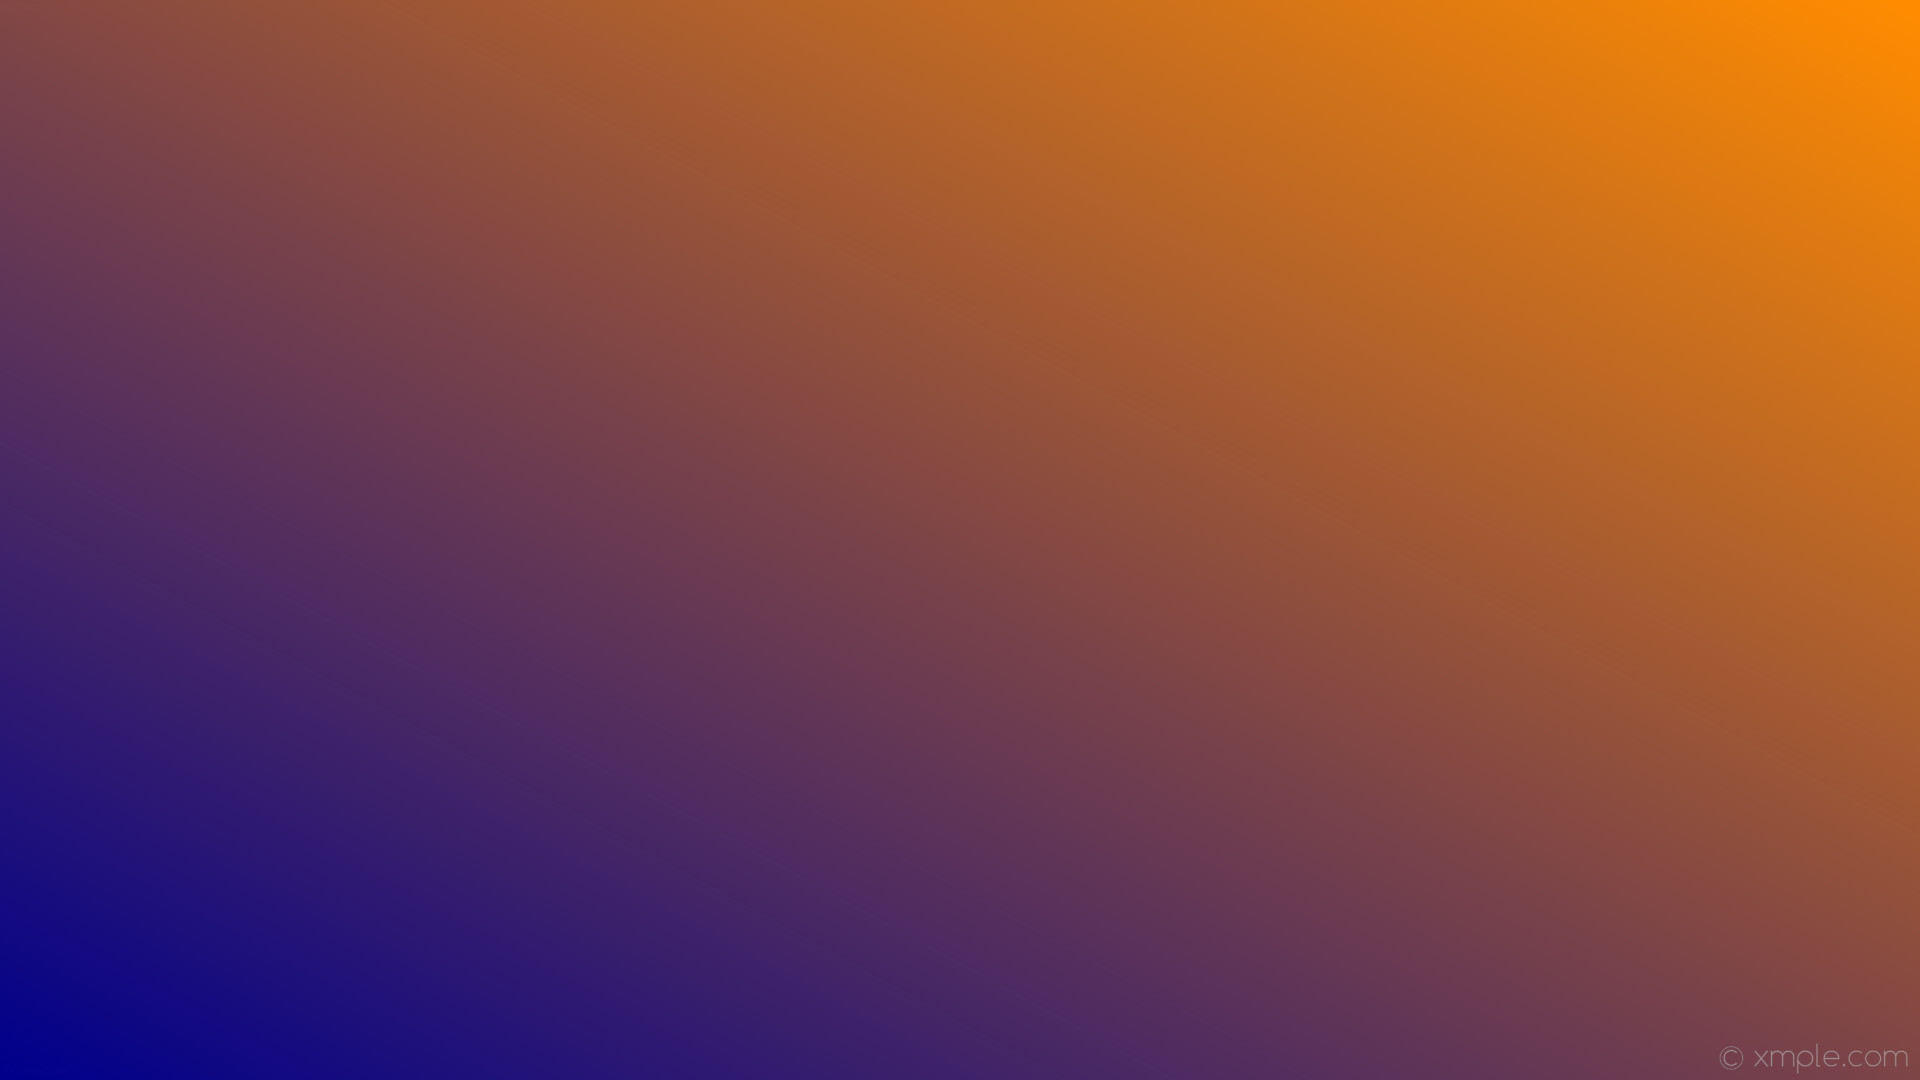 dark orange wallpaper,purple,blue,violet,orange,yellow